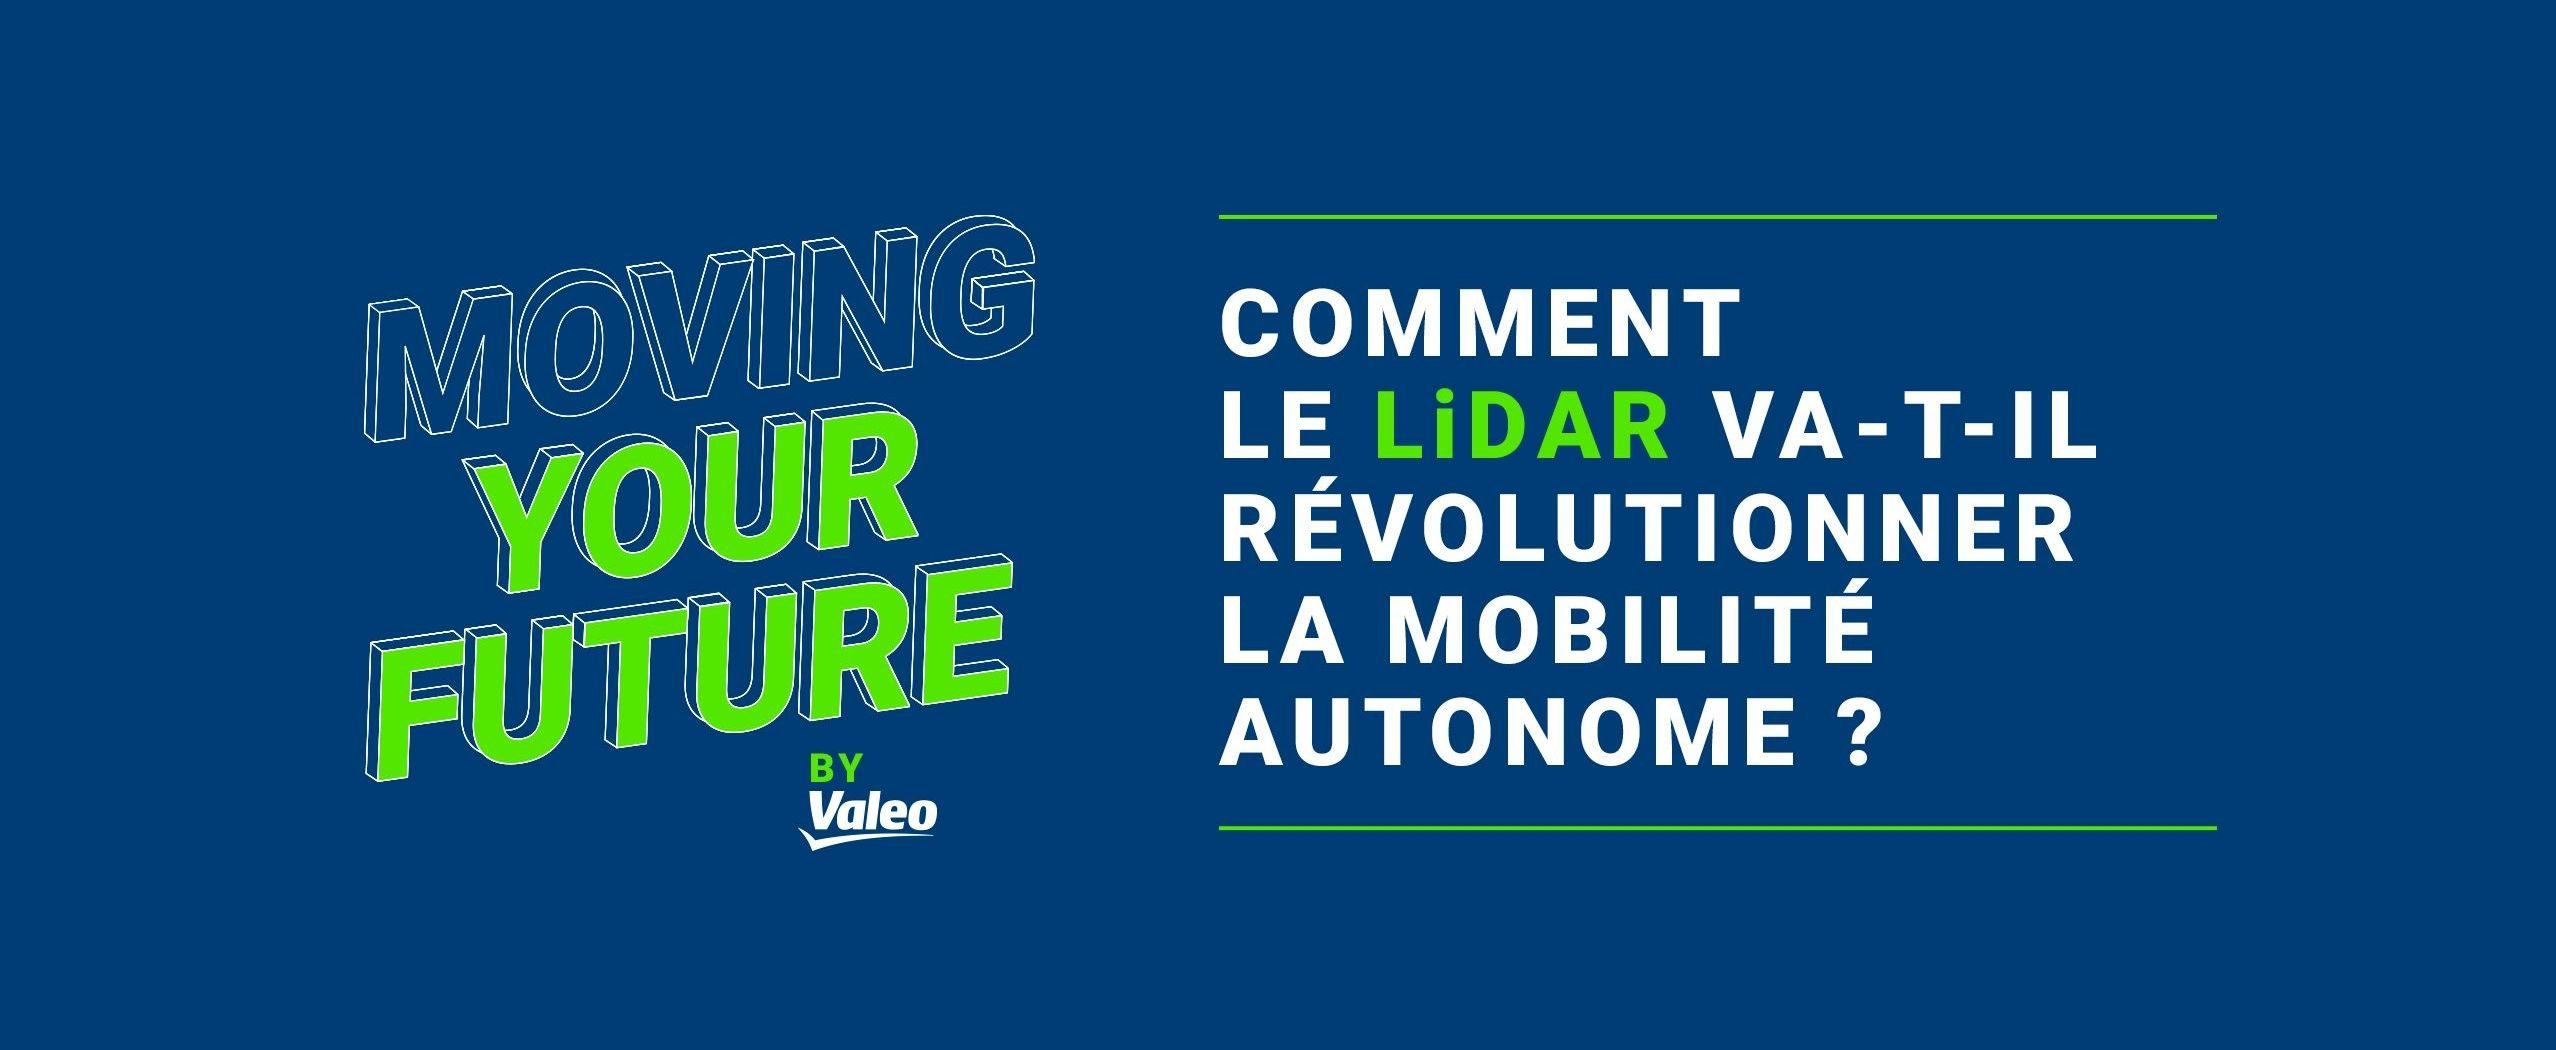 Moving your future by Valeo - Comment le Lidar va-t-il révolutionner la mobilité autonome ?